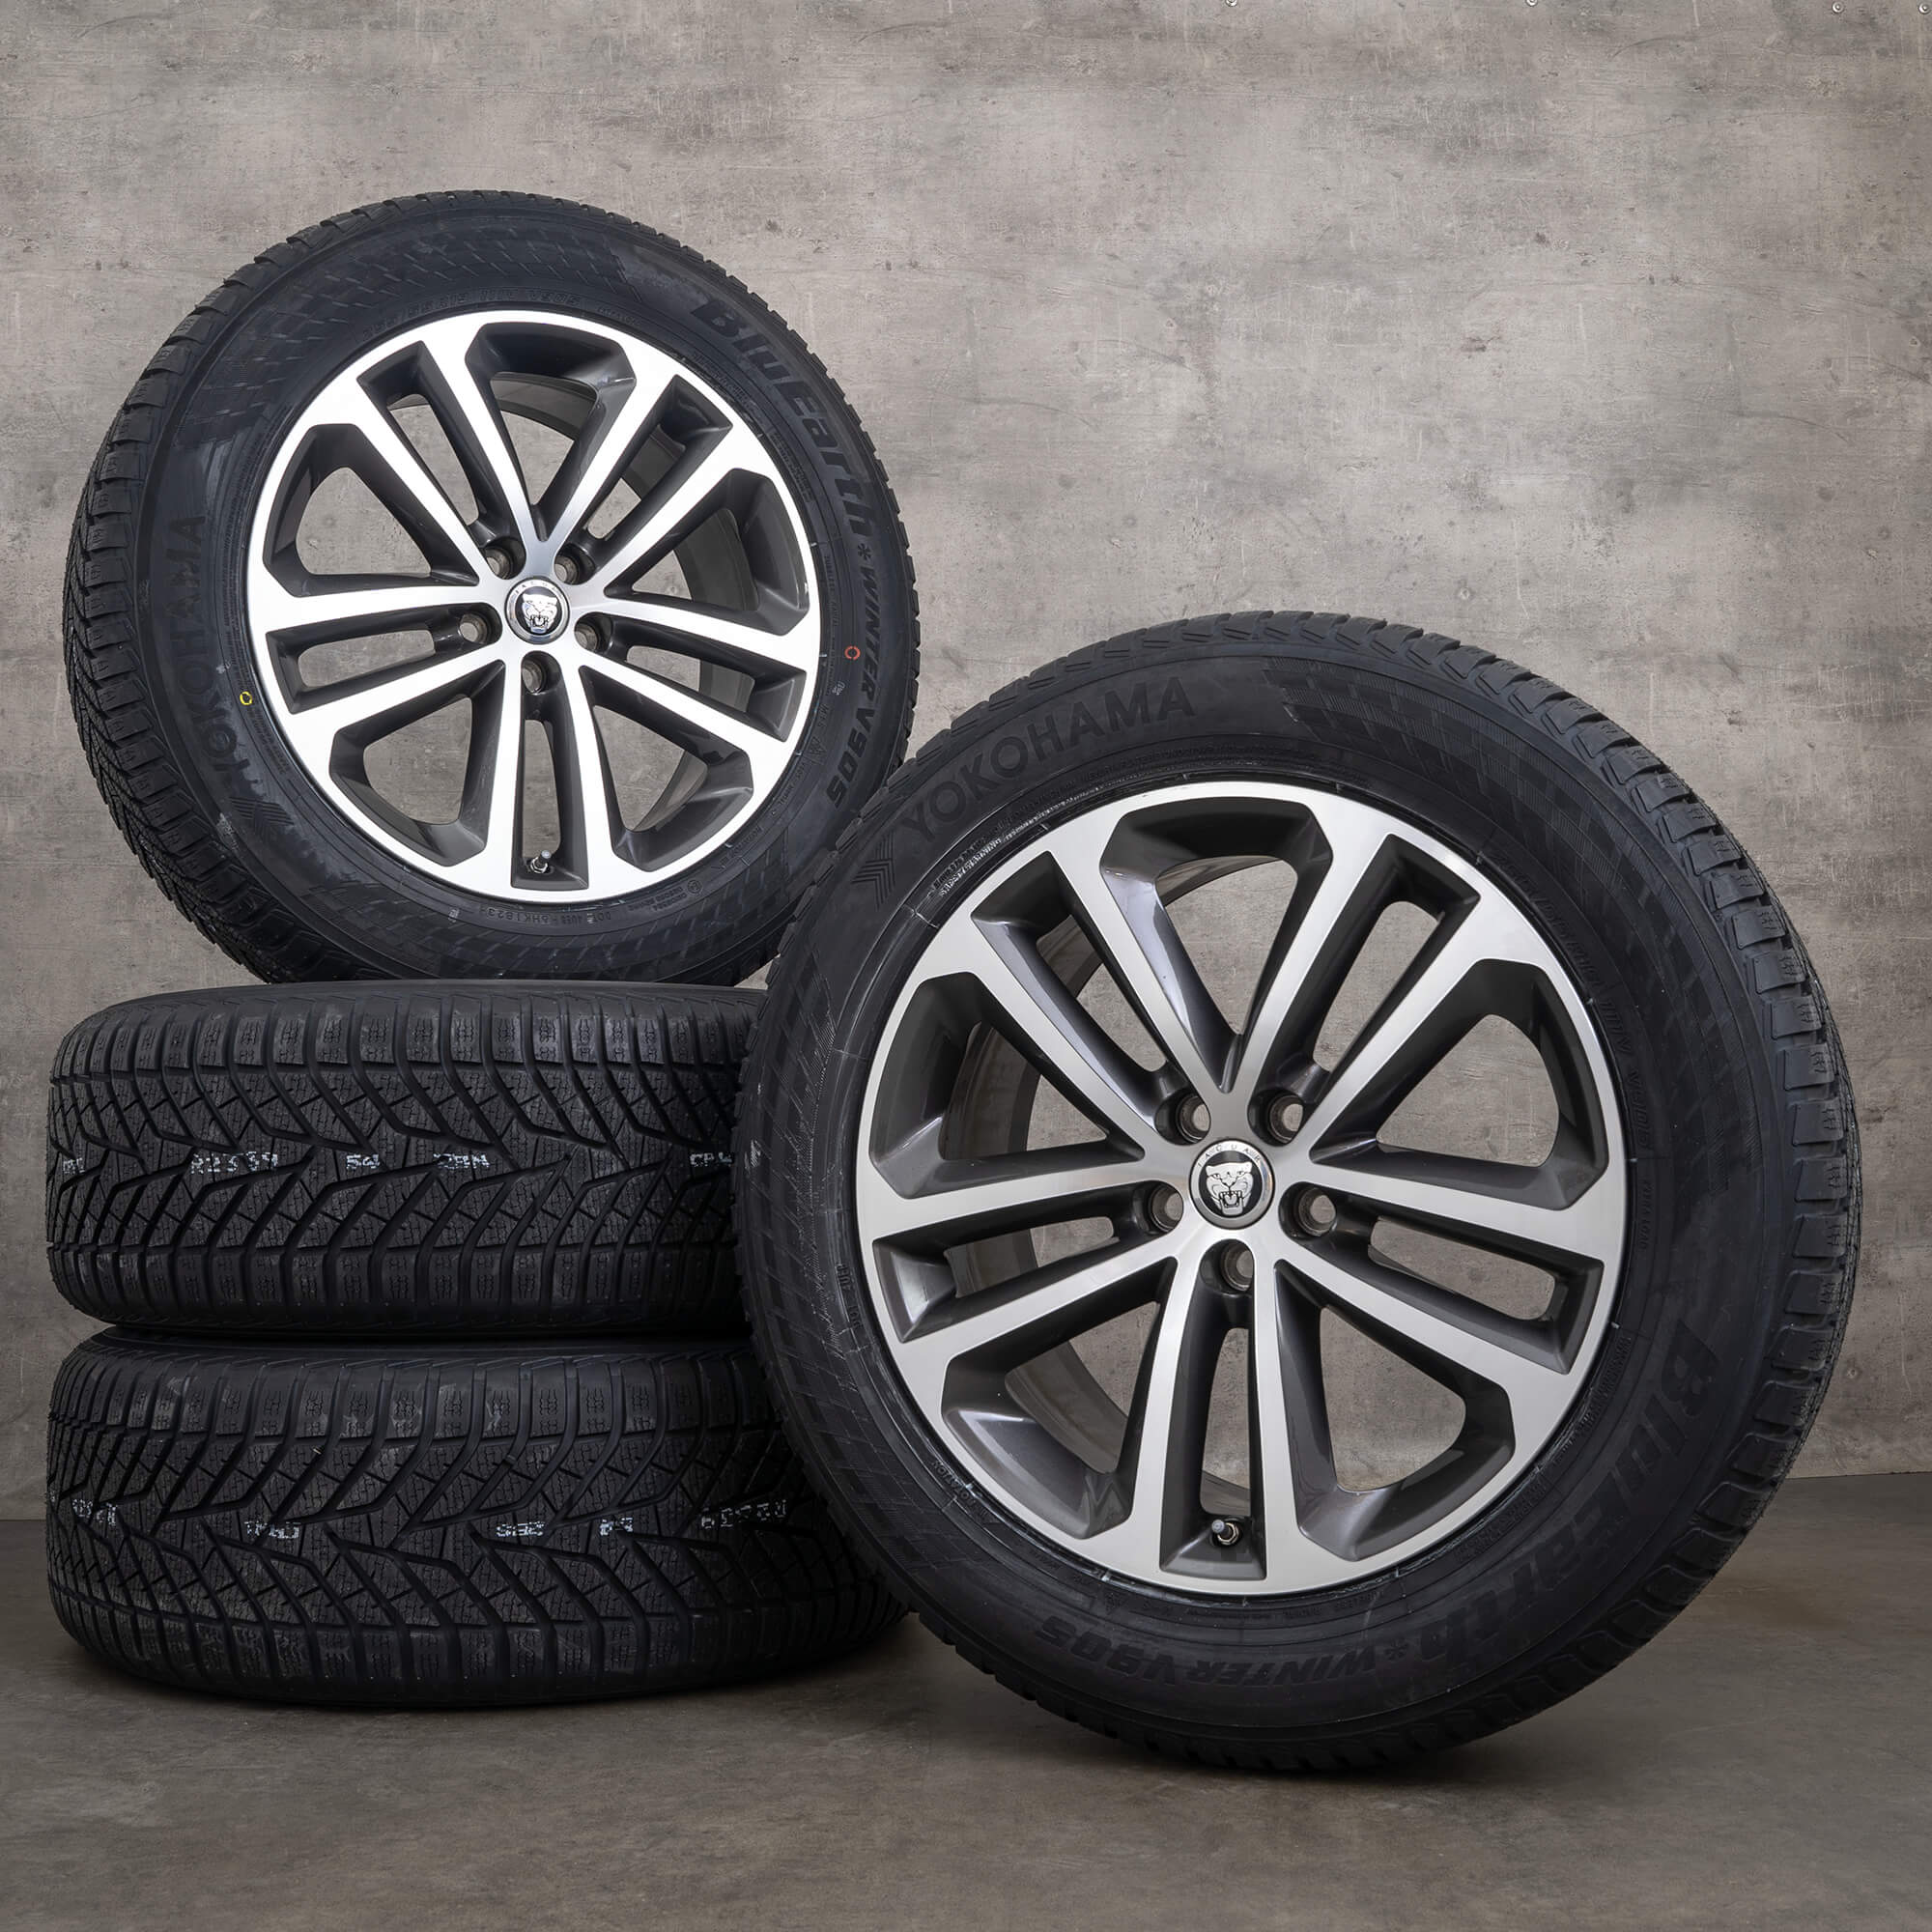 Cerchi Jaguar da 19 pollici, F-Pace cerchi in alluminio, pneumatici invernali, ruote